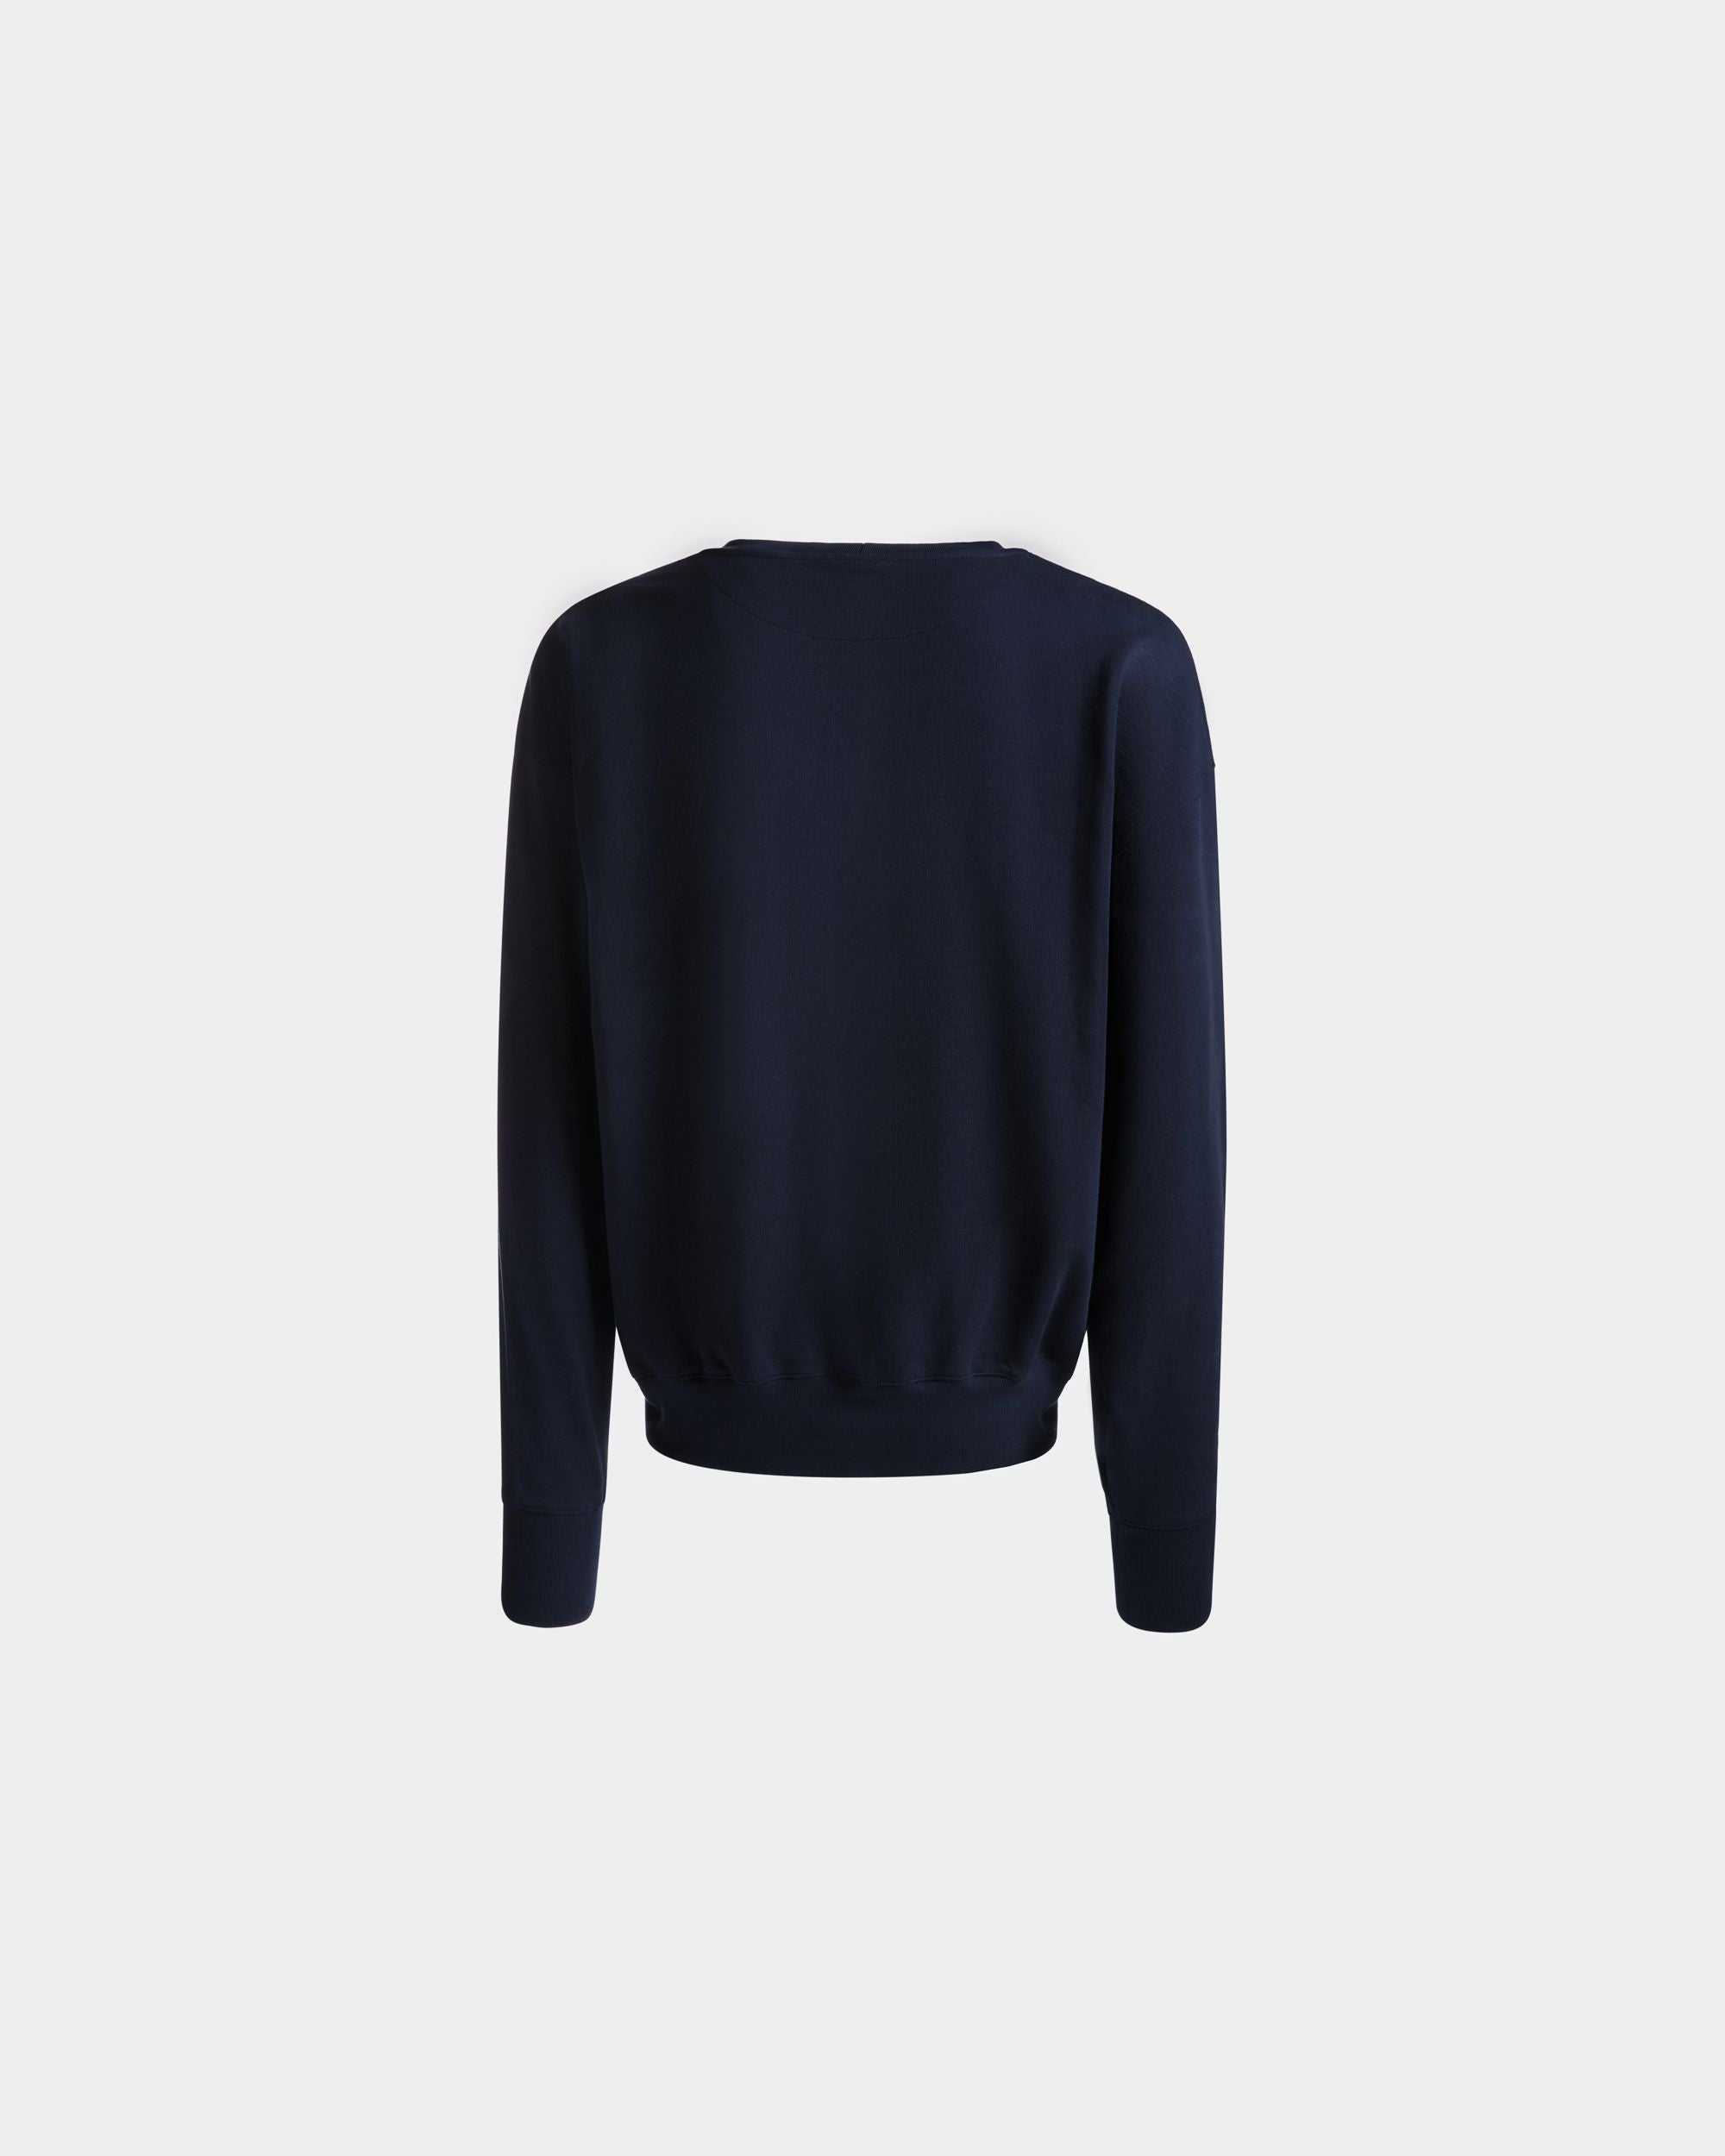 Men's Sweatshirt in Navy Blue Cotton | Bally | Still Life Back